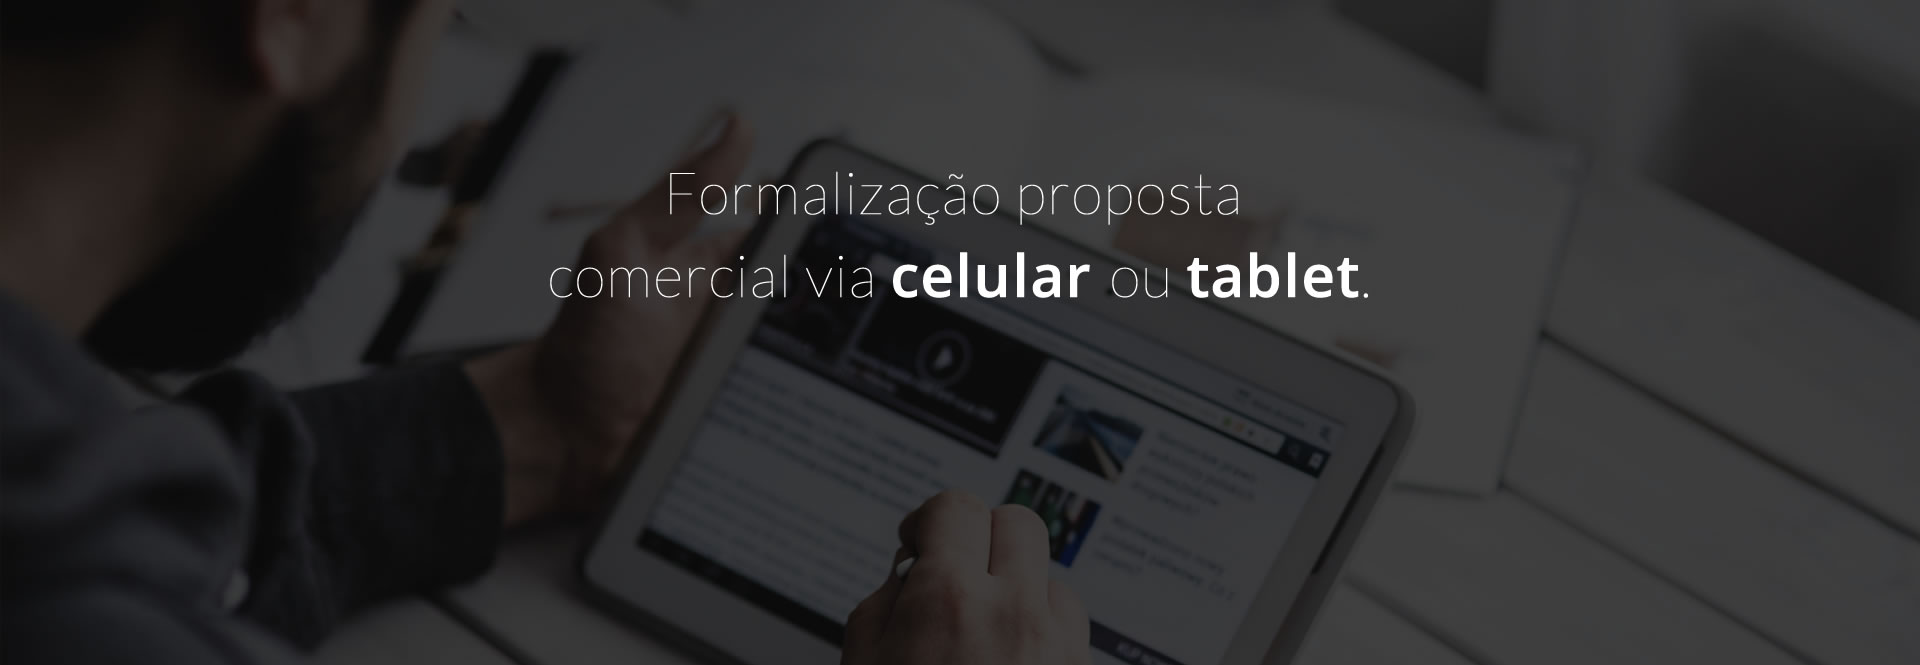 Formalização proposta comercial via celular ou tablete